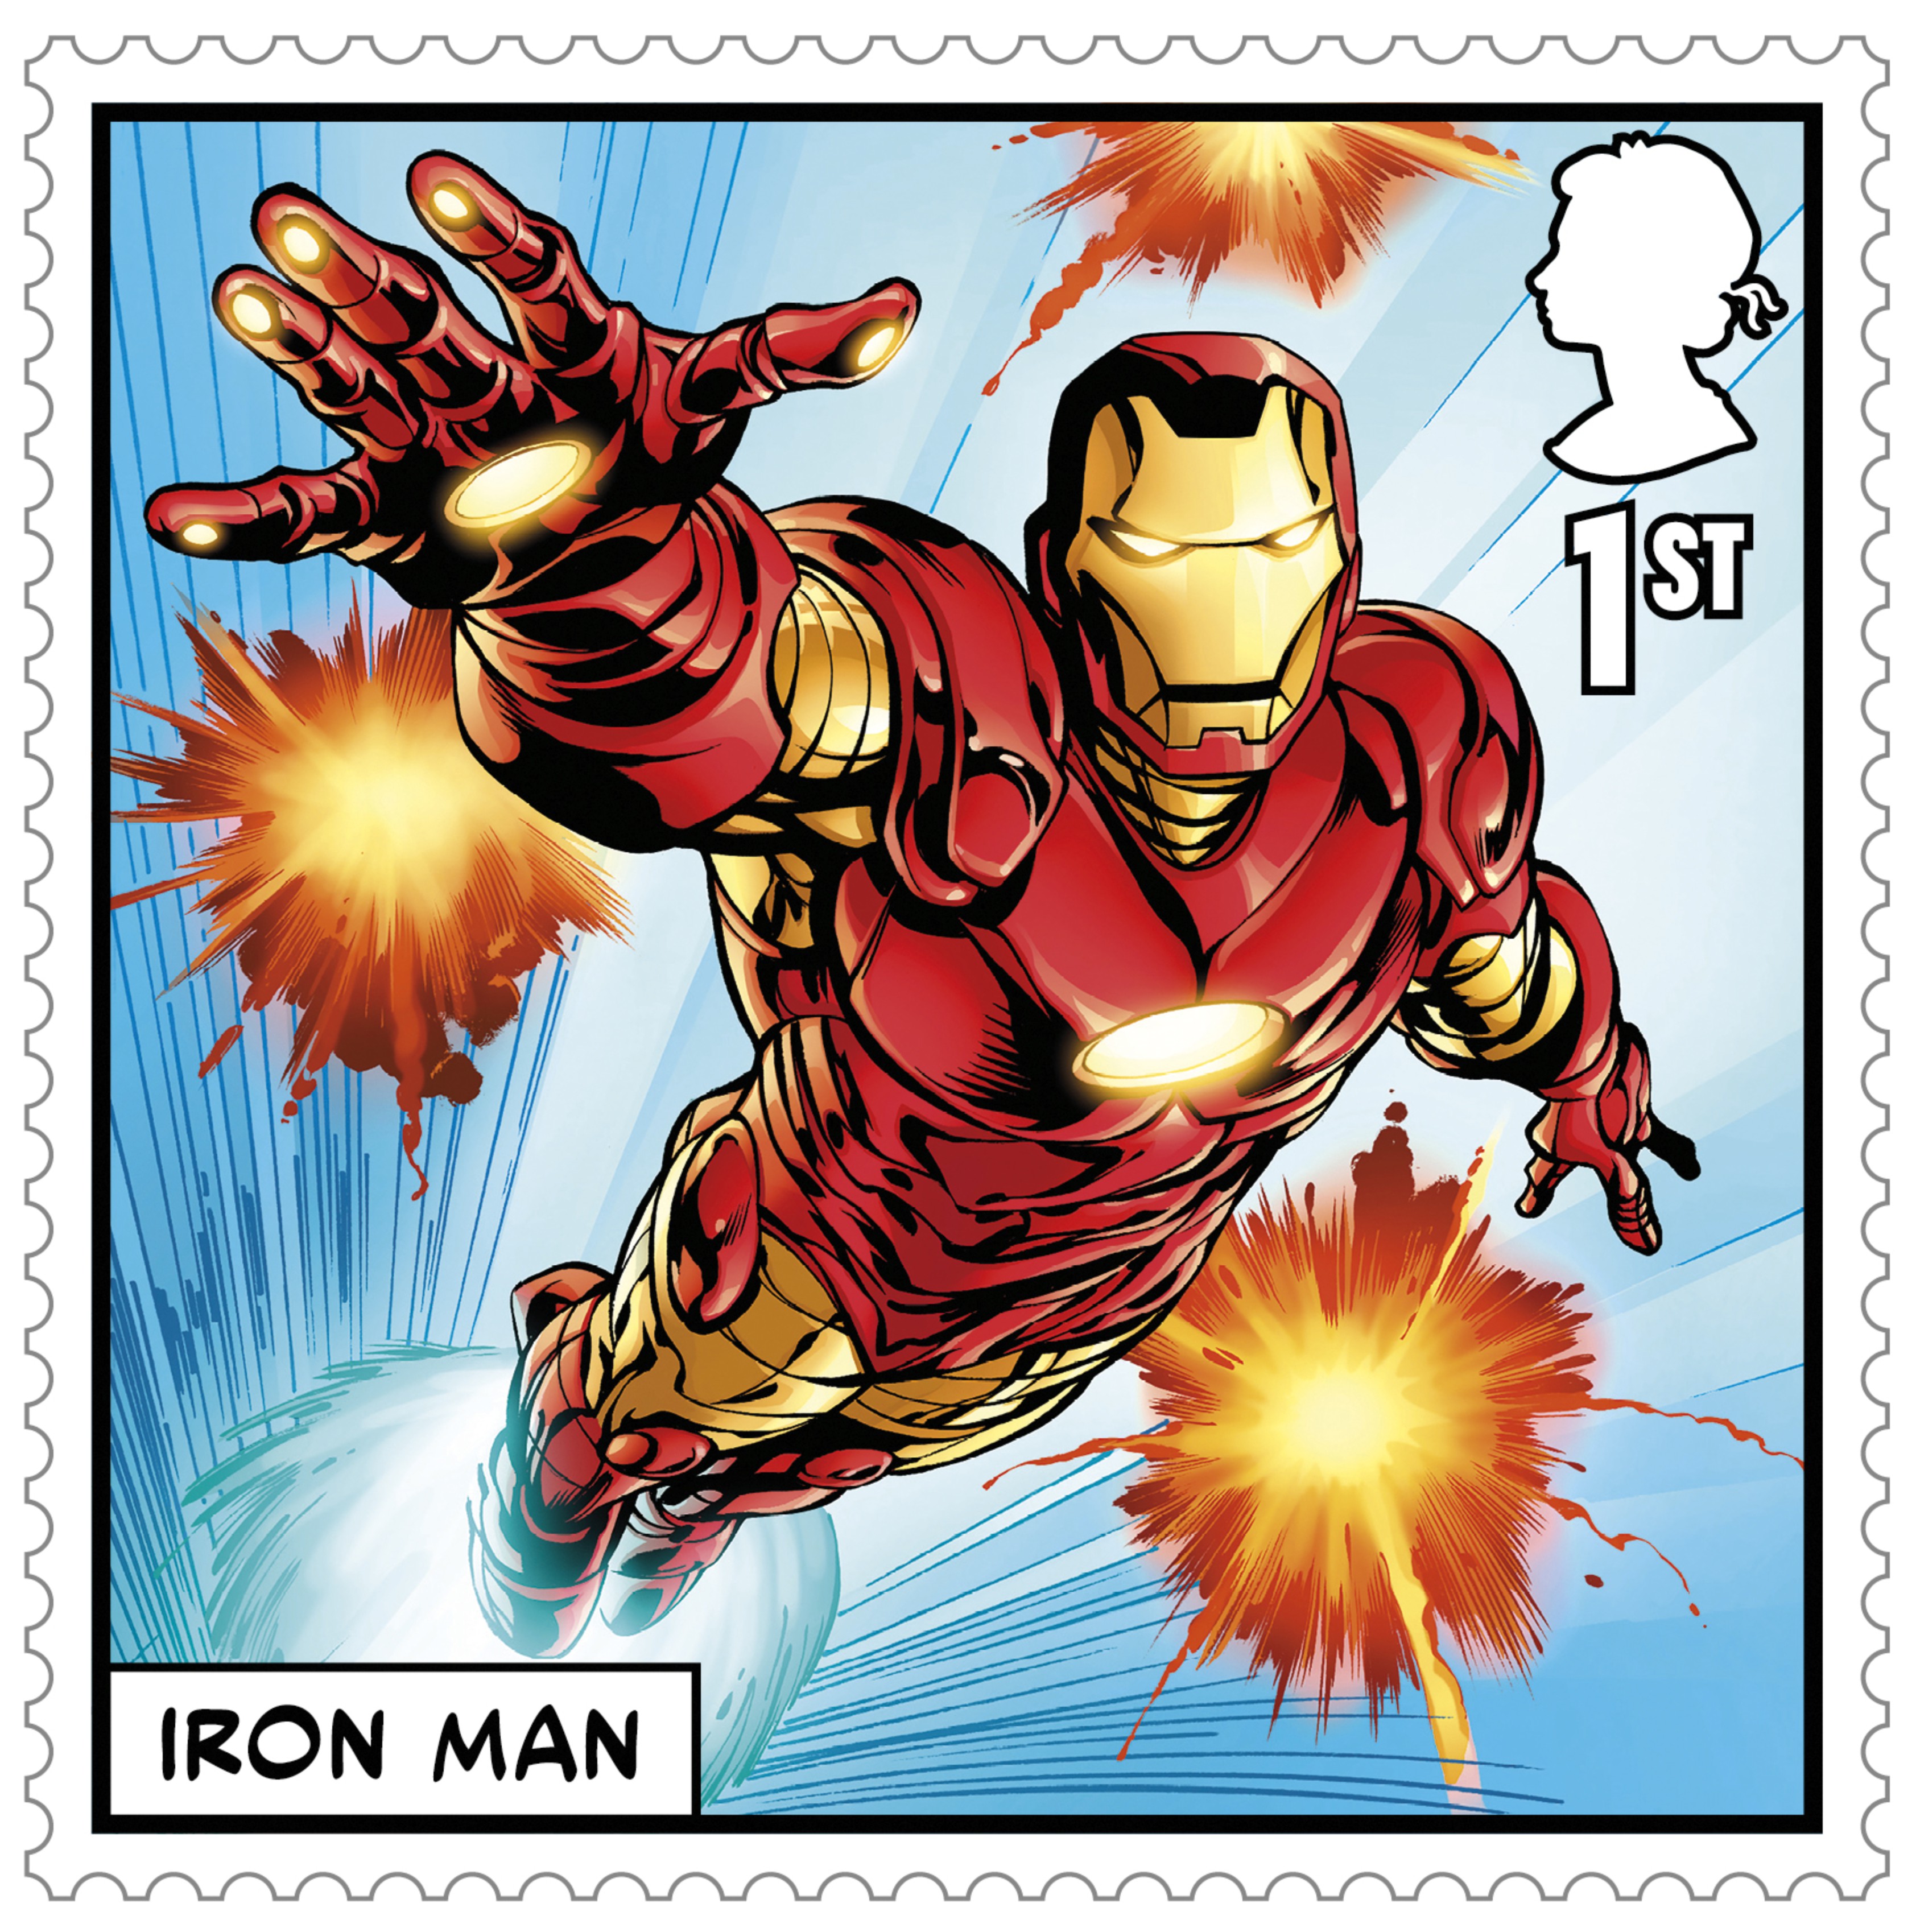 Iron Man stamp